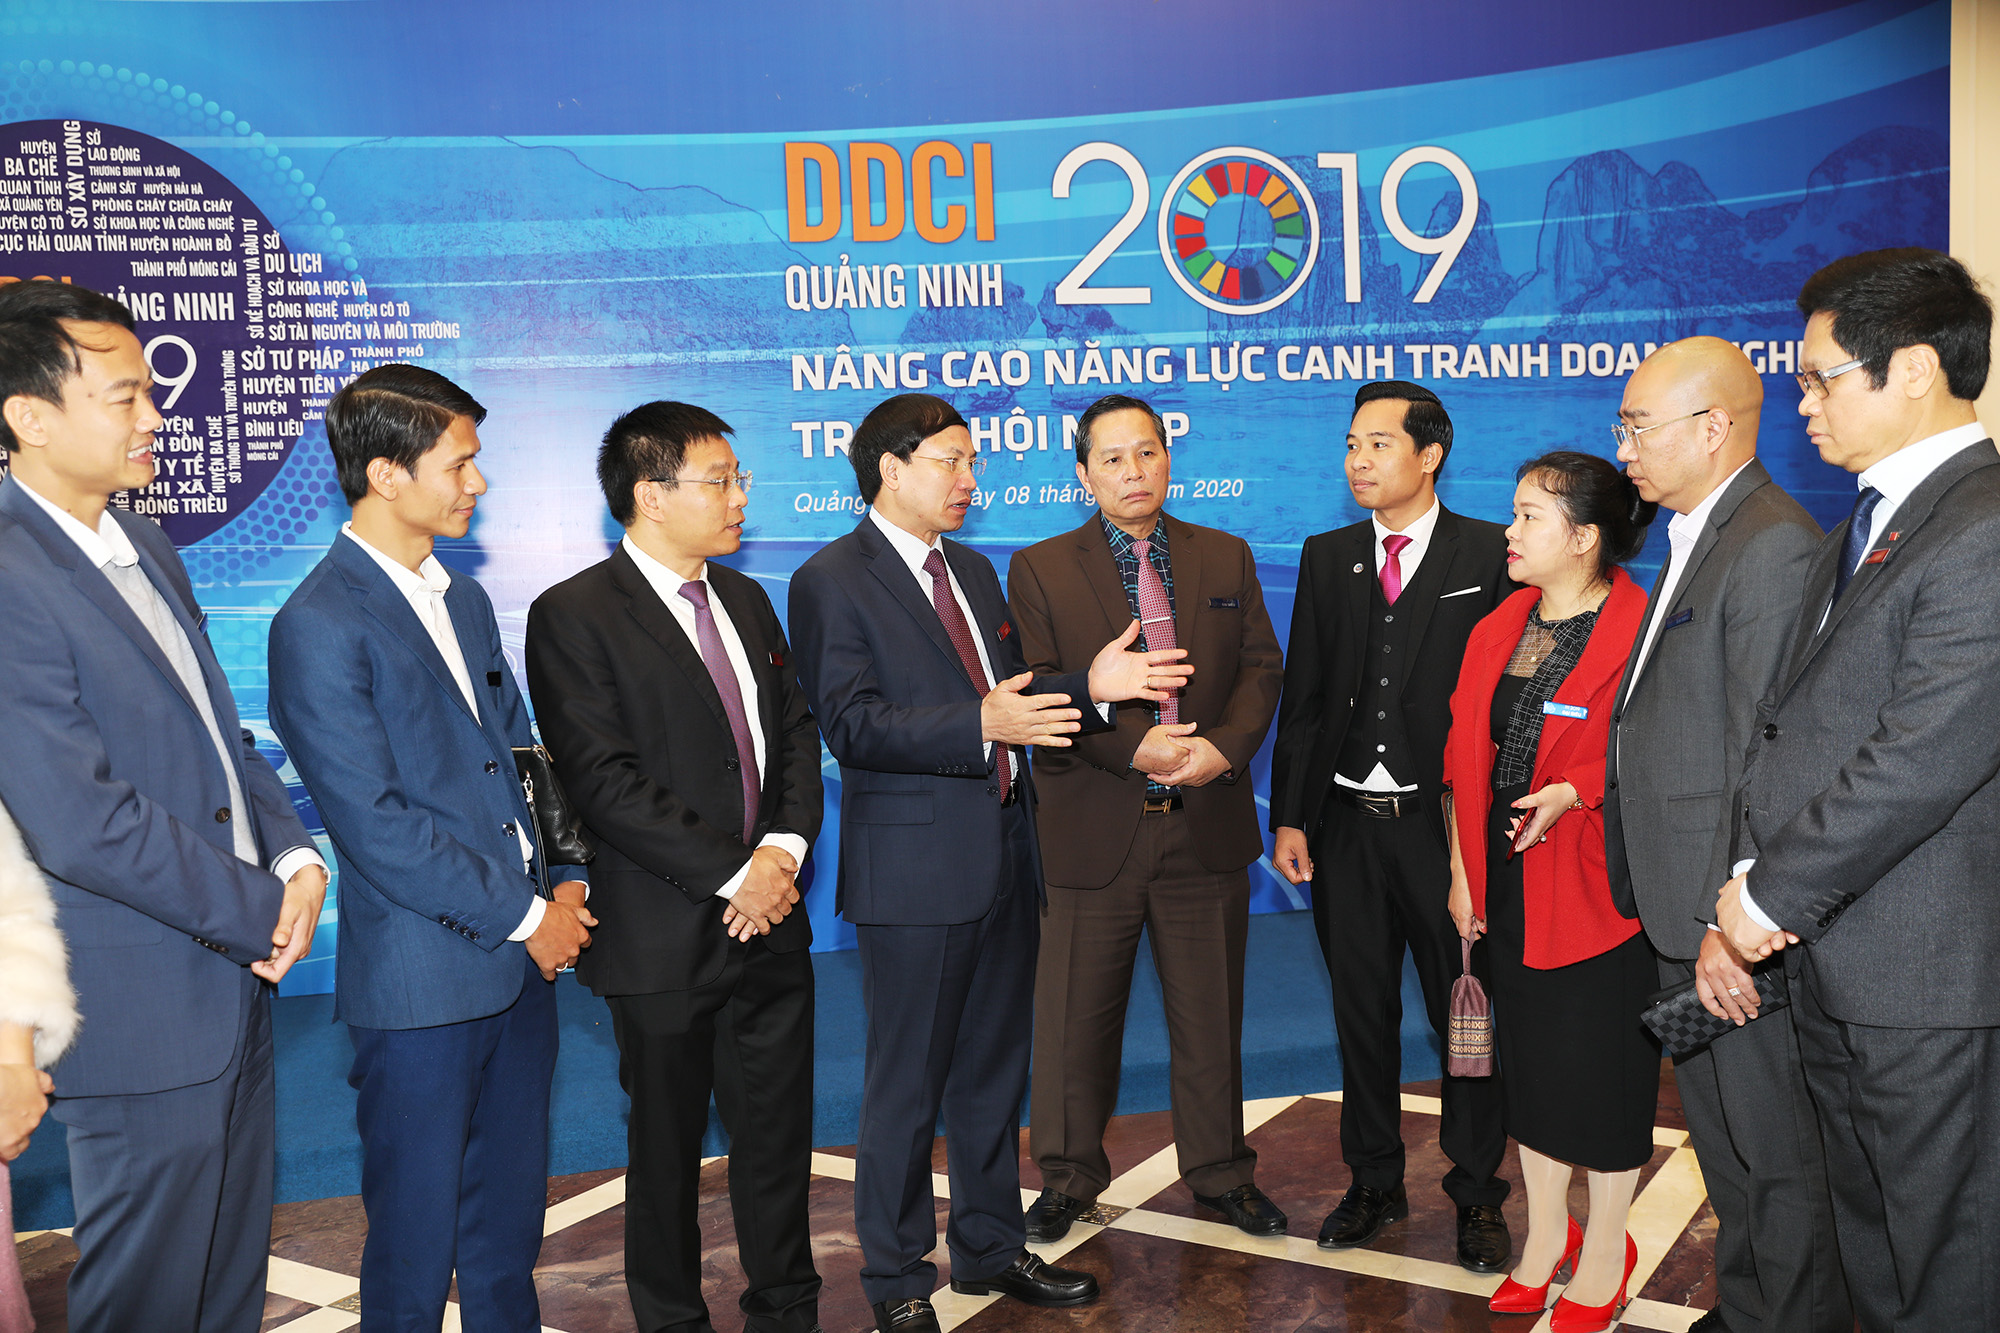 Lãnh đạo tỉnh Quảng Ninh trò chuyện với doanh nghiệp bên lề lễ công bố DDCI Quảng Ninh 2019, tổ chức tại TP Hạ Long, tháng 2/2020.